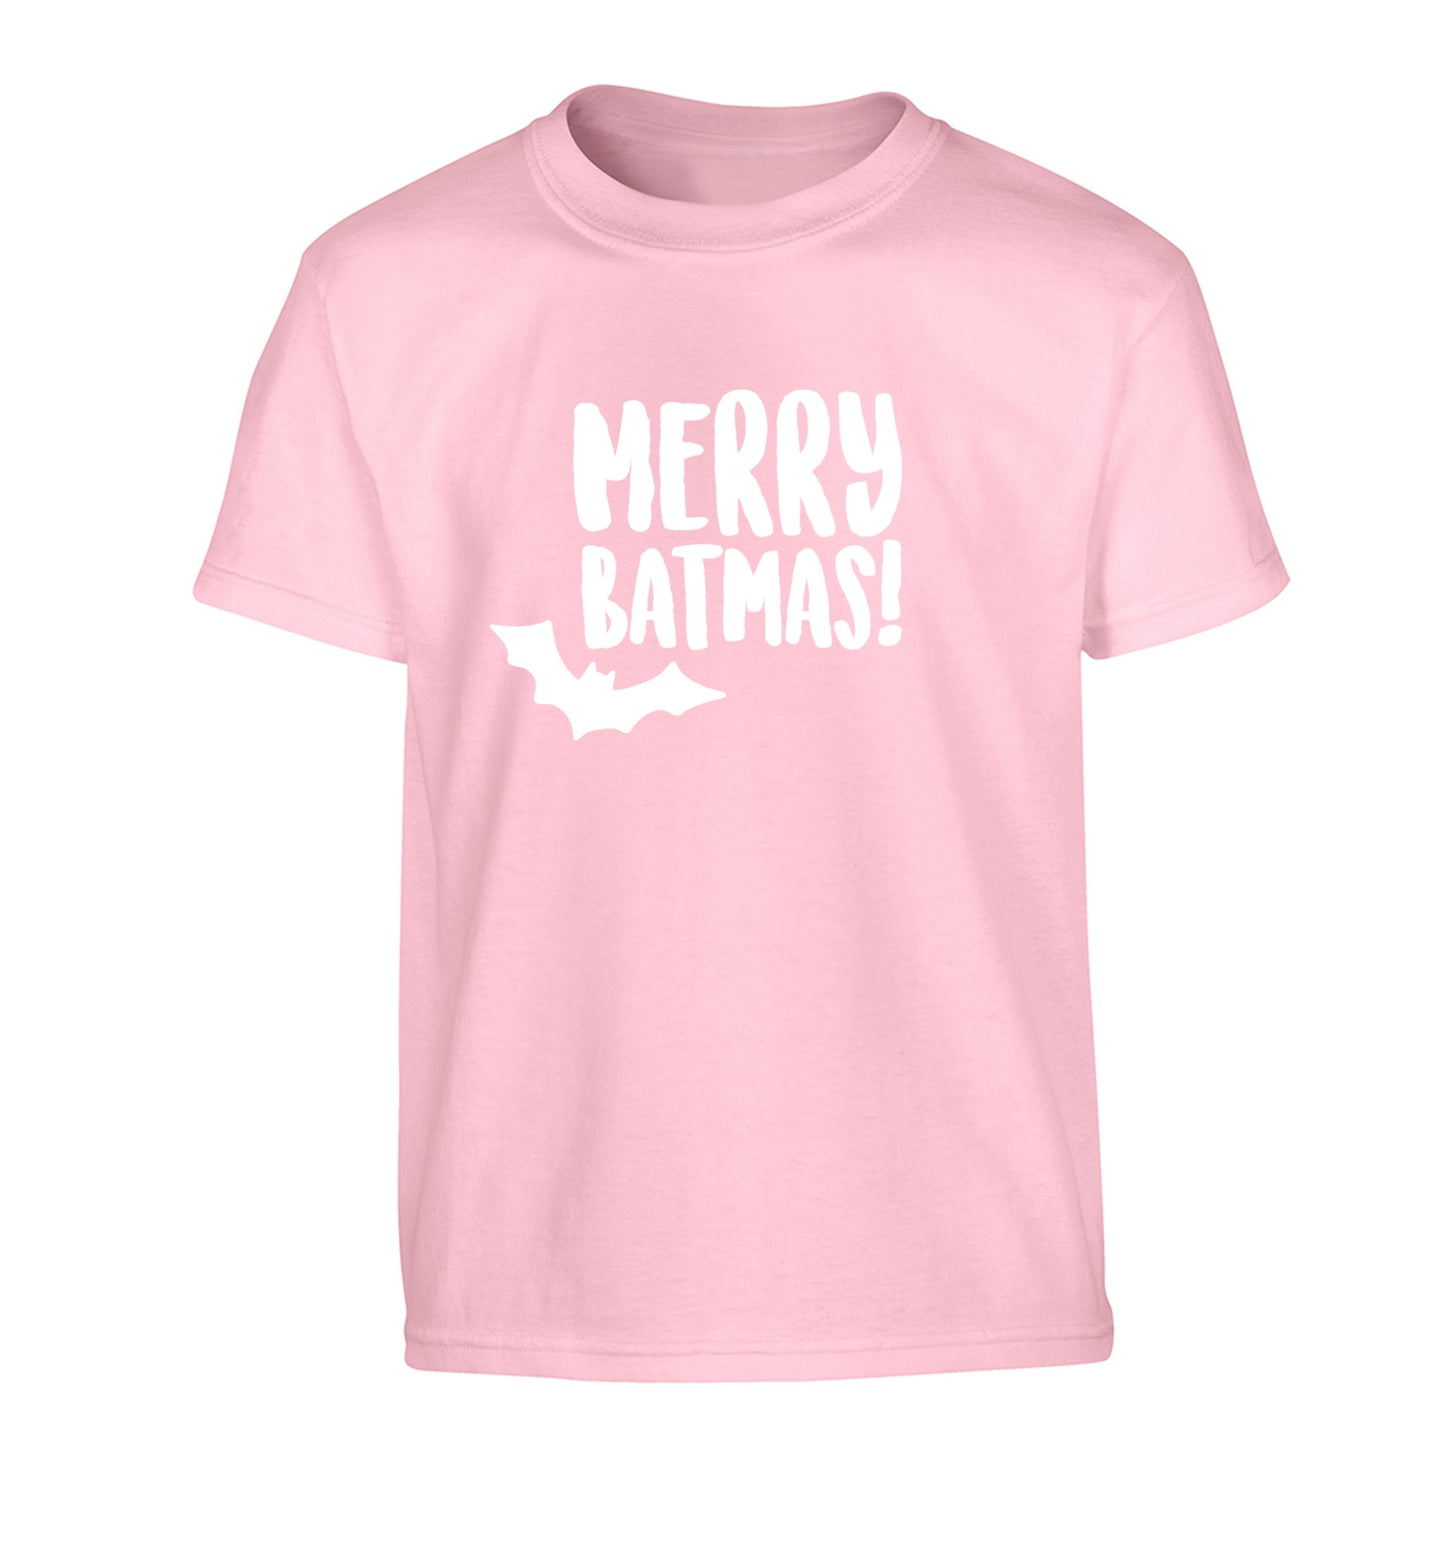 Merry Batmas Children's light pink Tshirt 12-14 Years